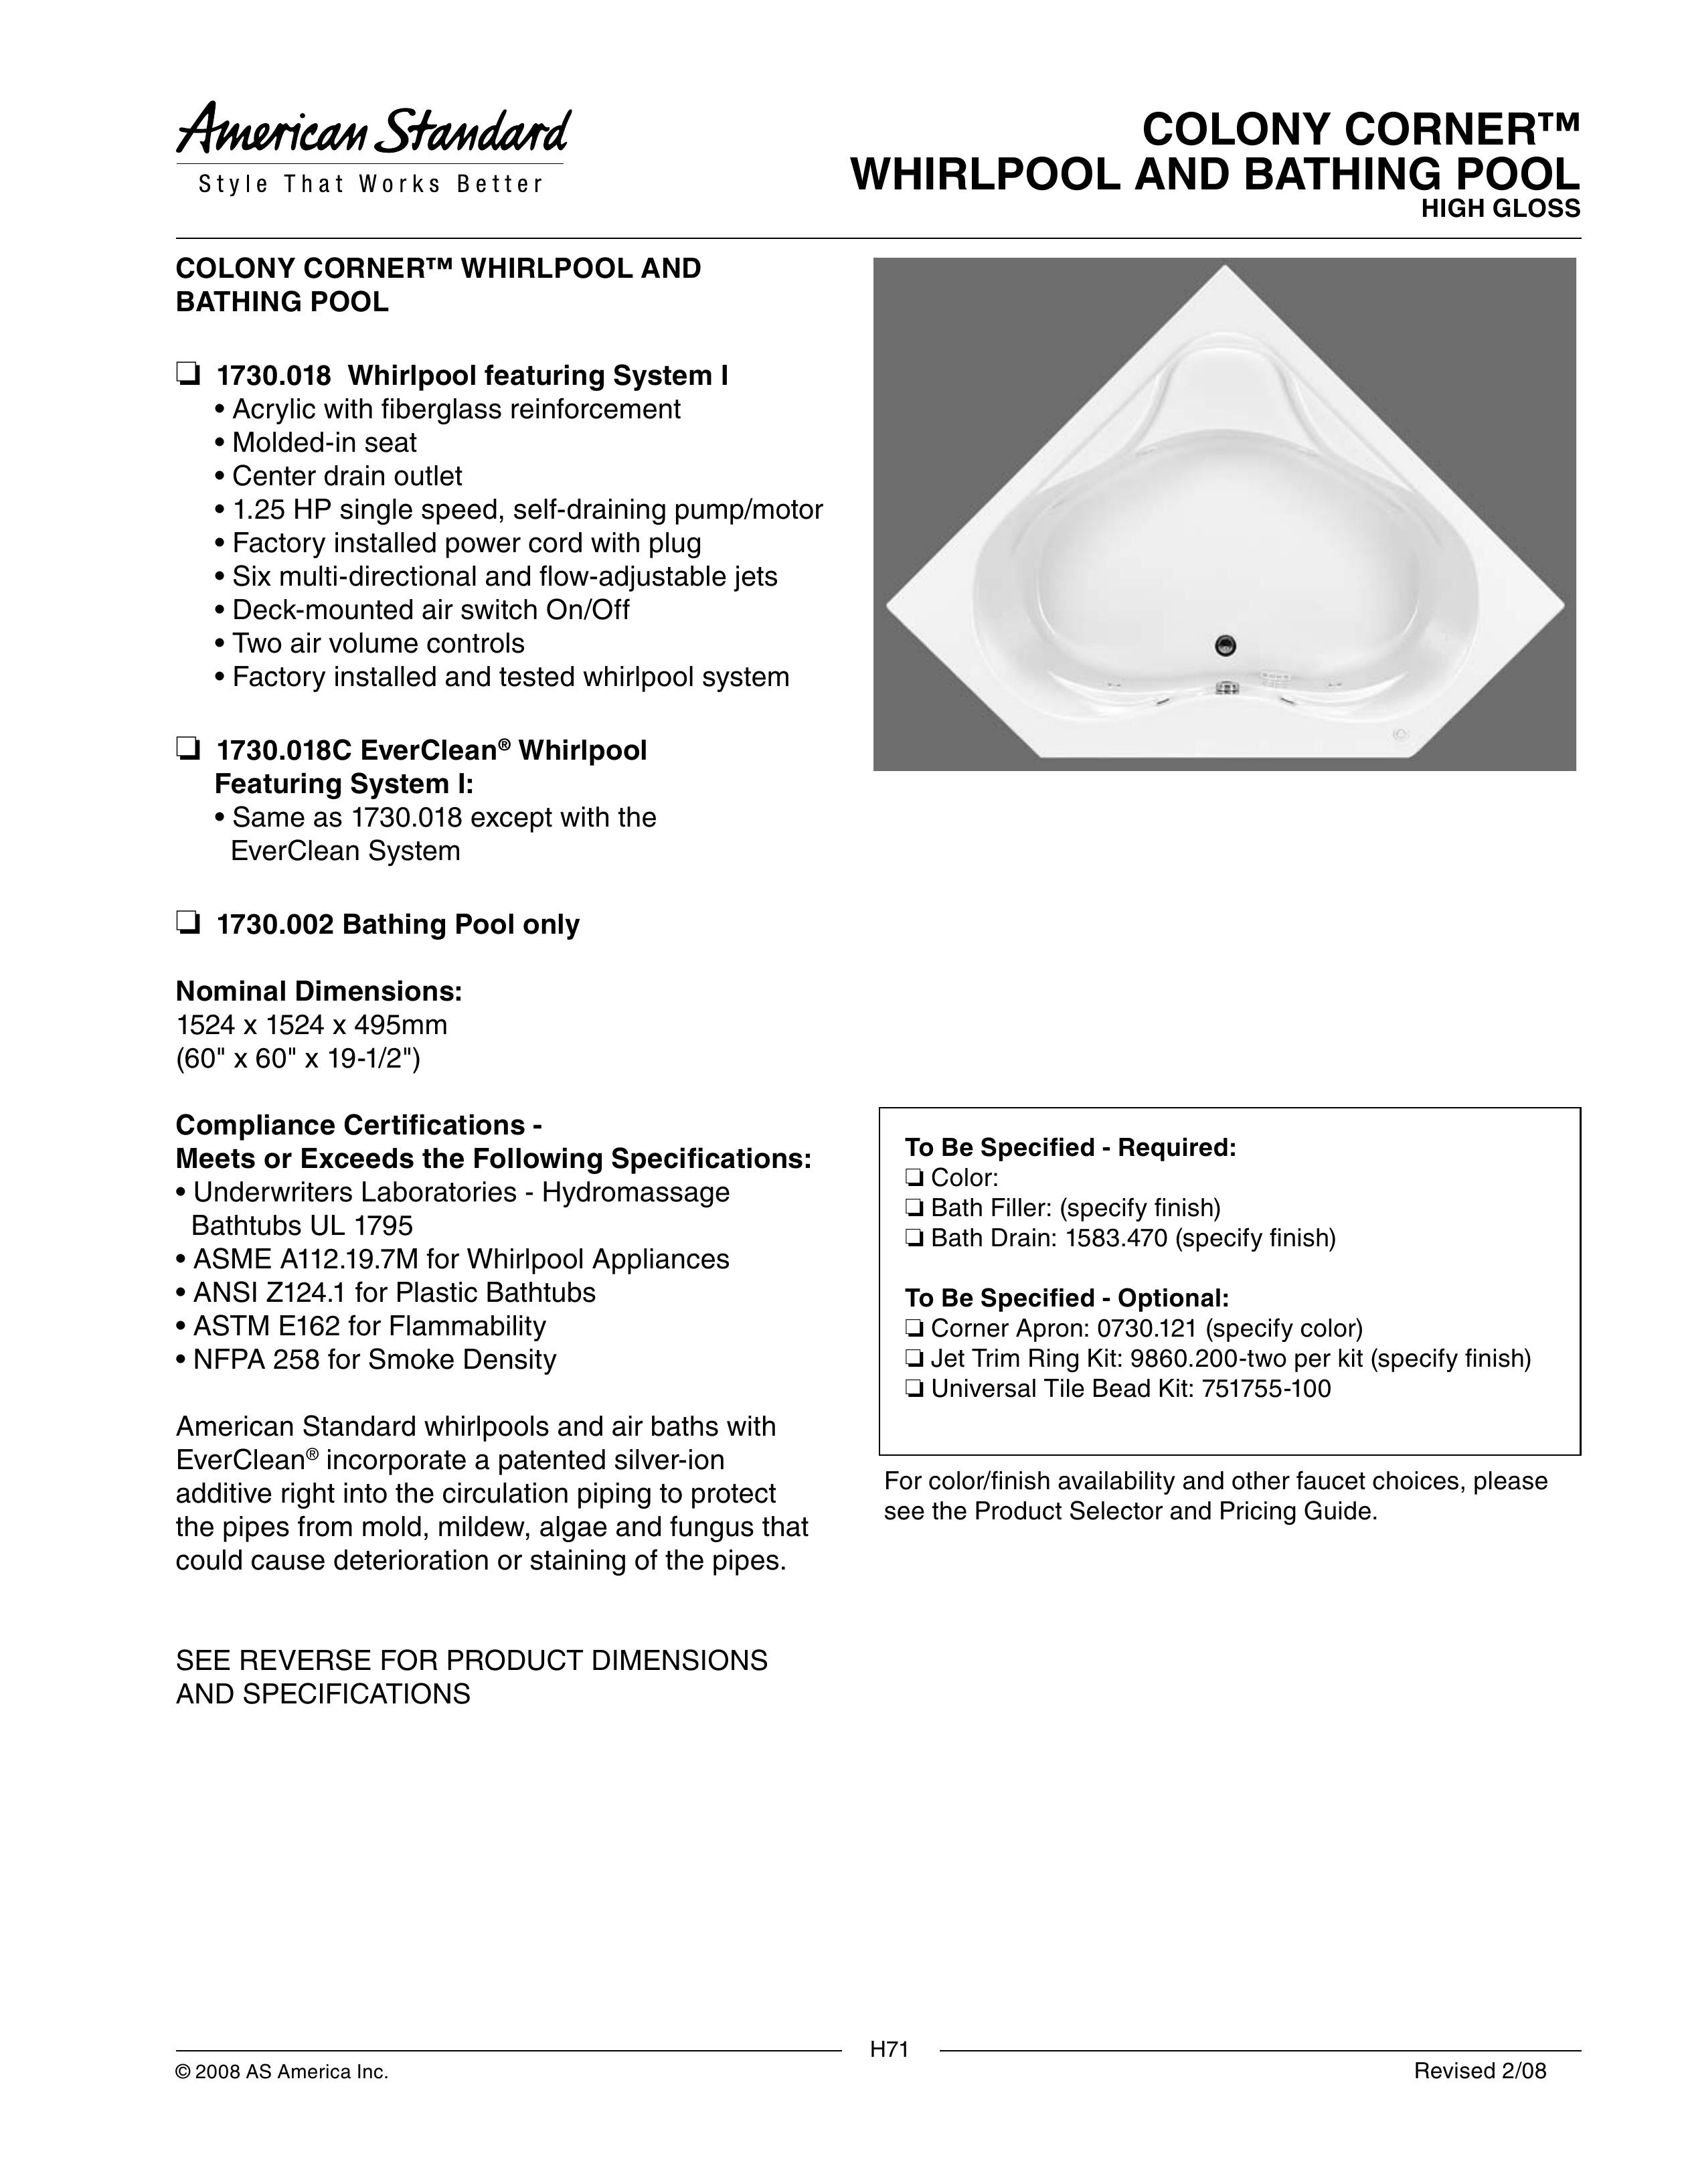 American Standard 1730.018C Hot Tub User Manual